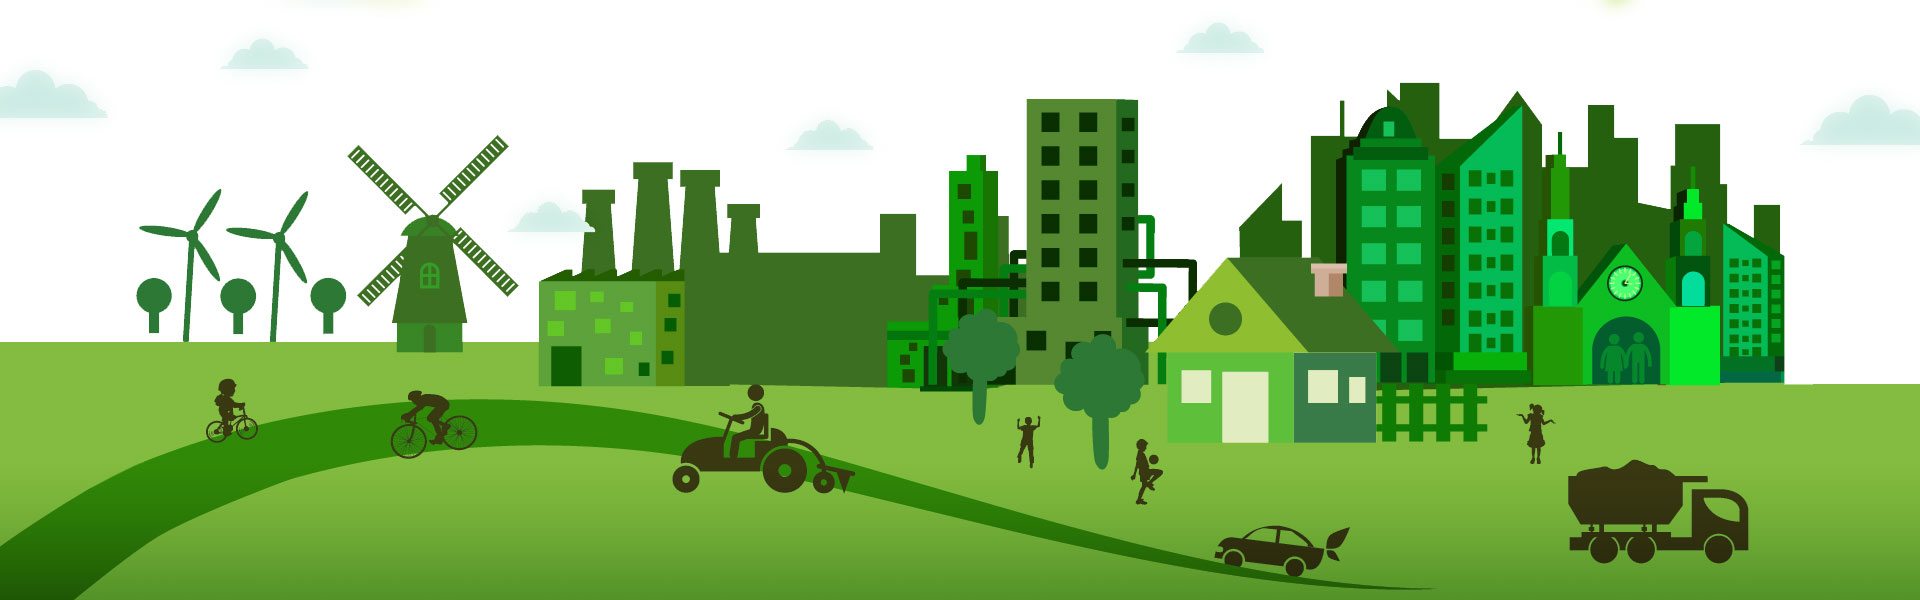 Visuel d'une ville verte (écologique)